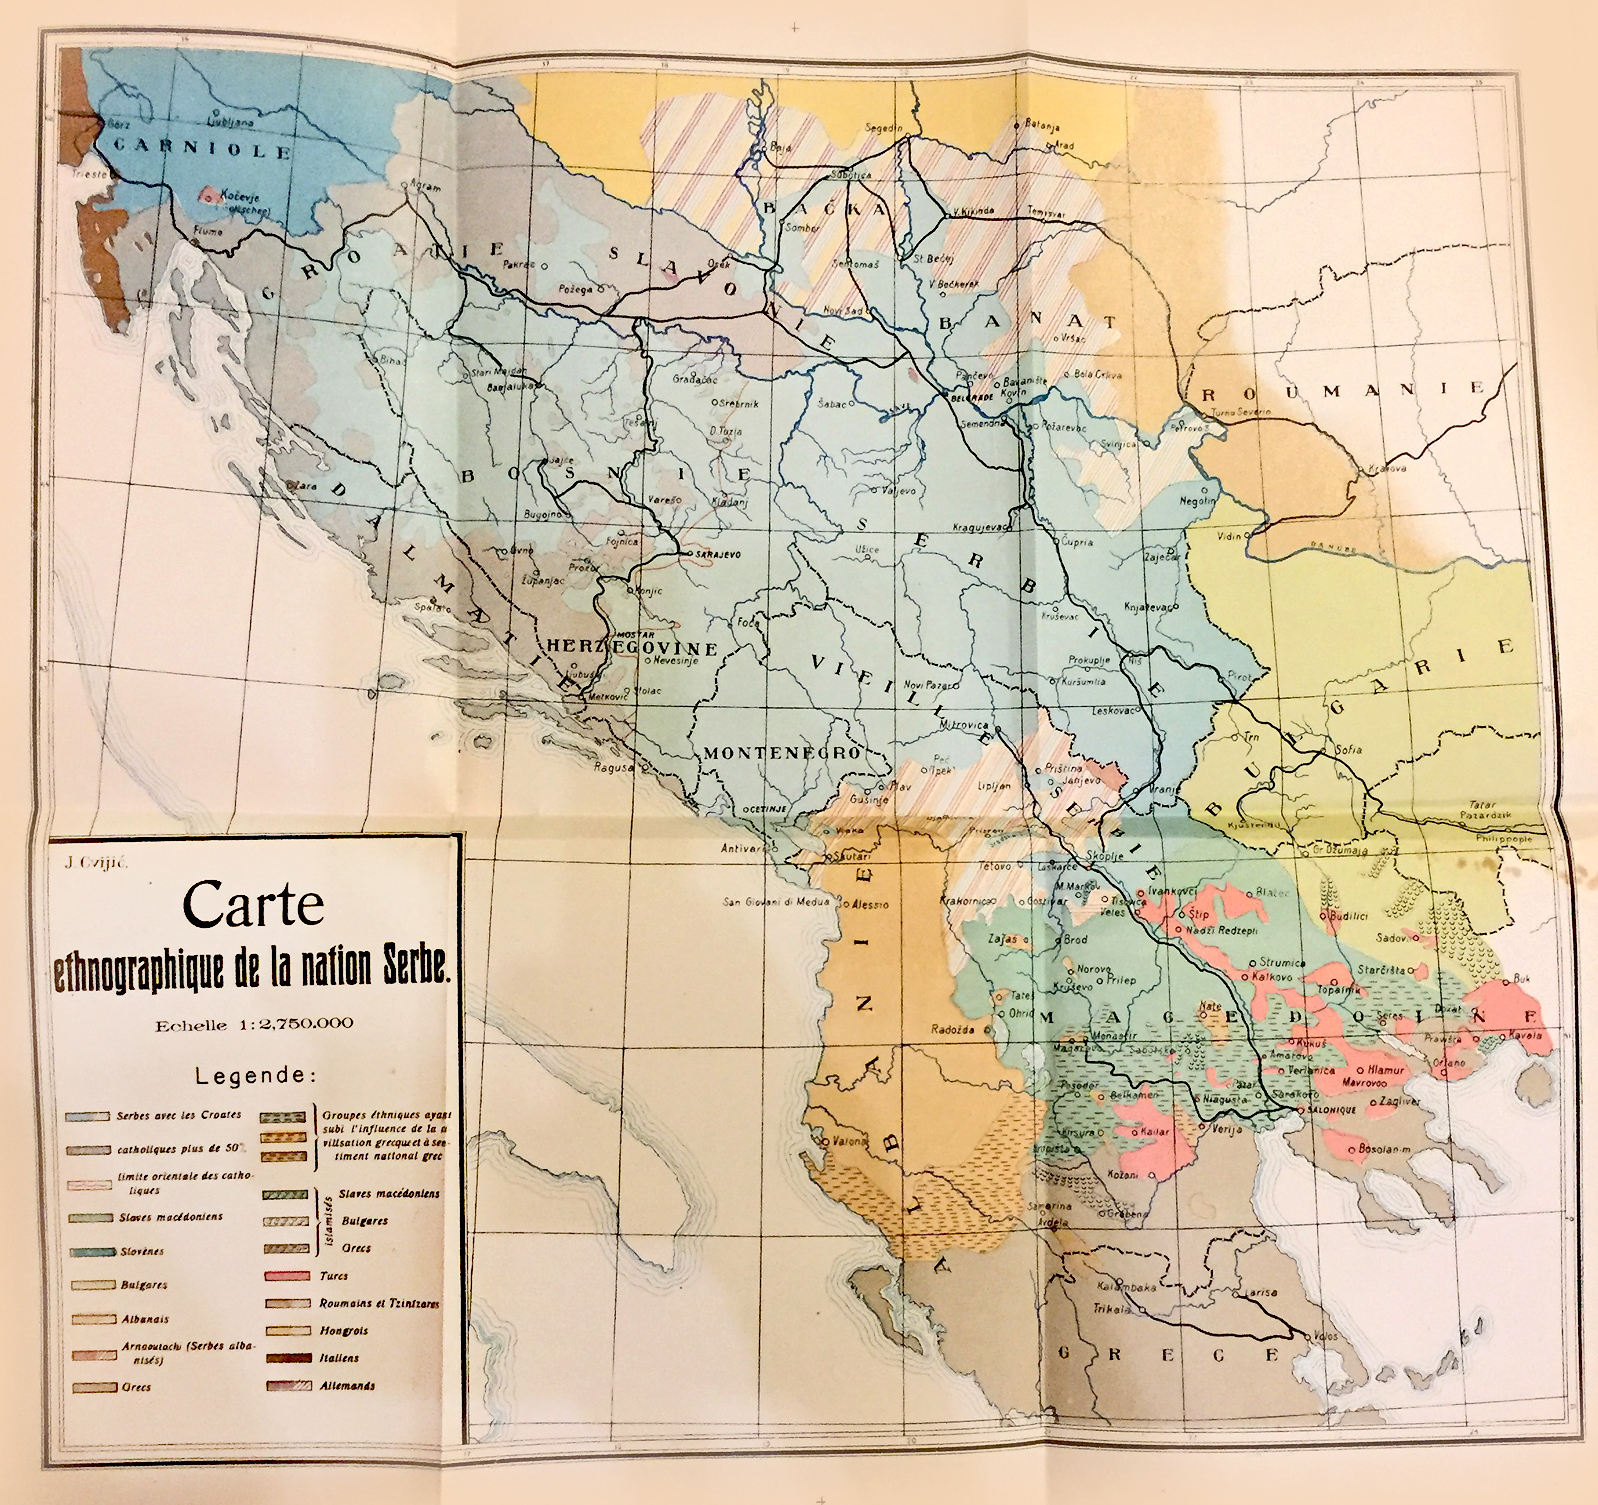 Etnografska karta srpskog naroda od Jovana Cvijića, objavljena 1908 u knjizi: Aneksija Bosne i Hercegovine...